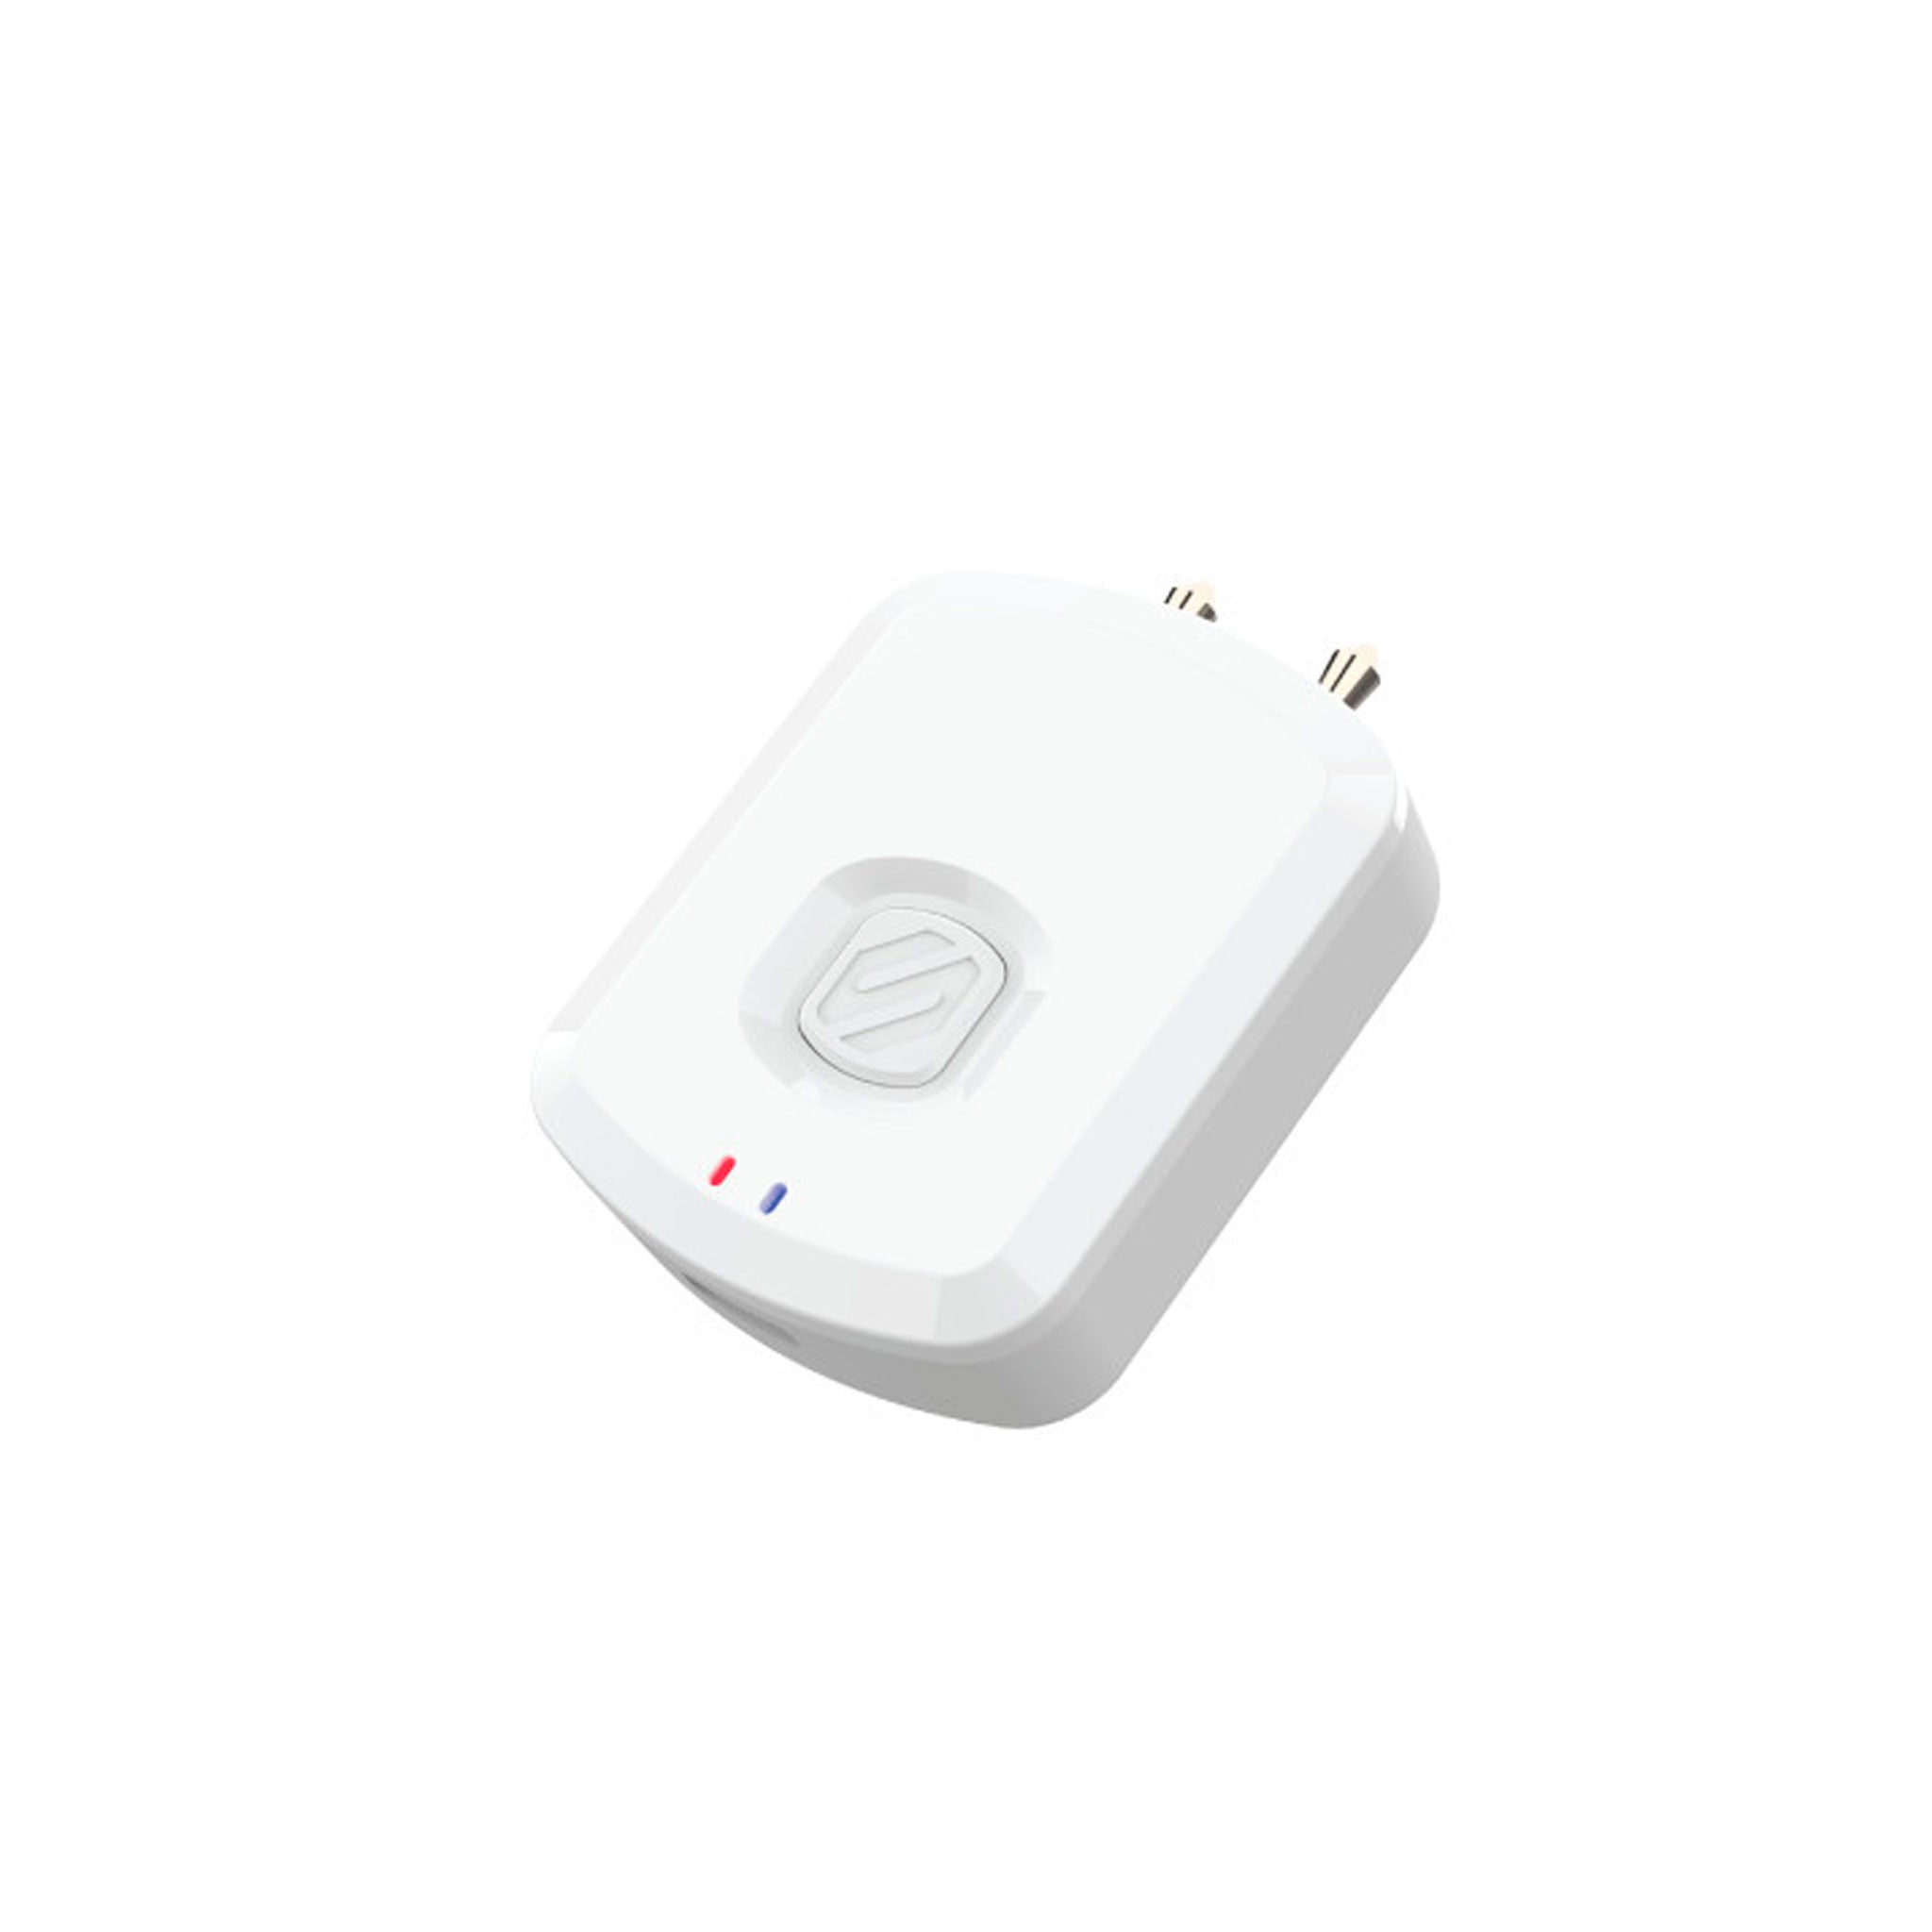 Scosche - Flytunes Bluetooth Wireless Audio Adapter - White